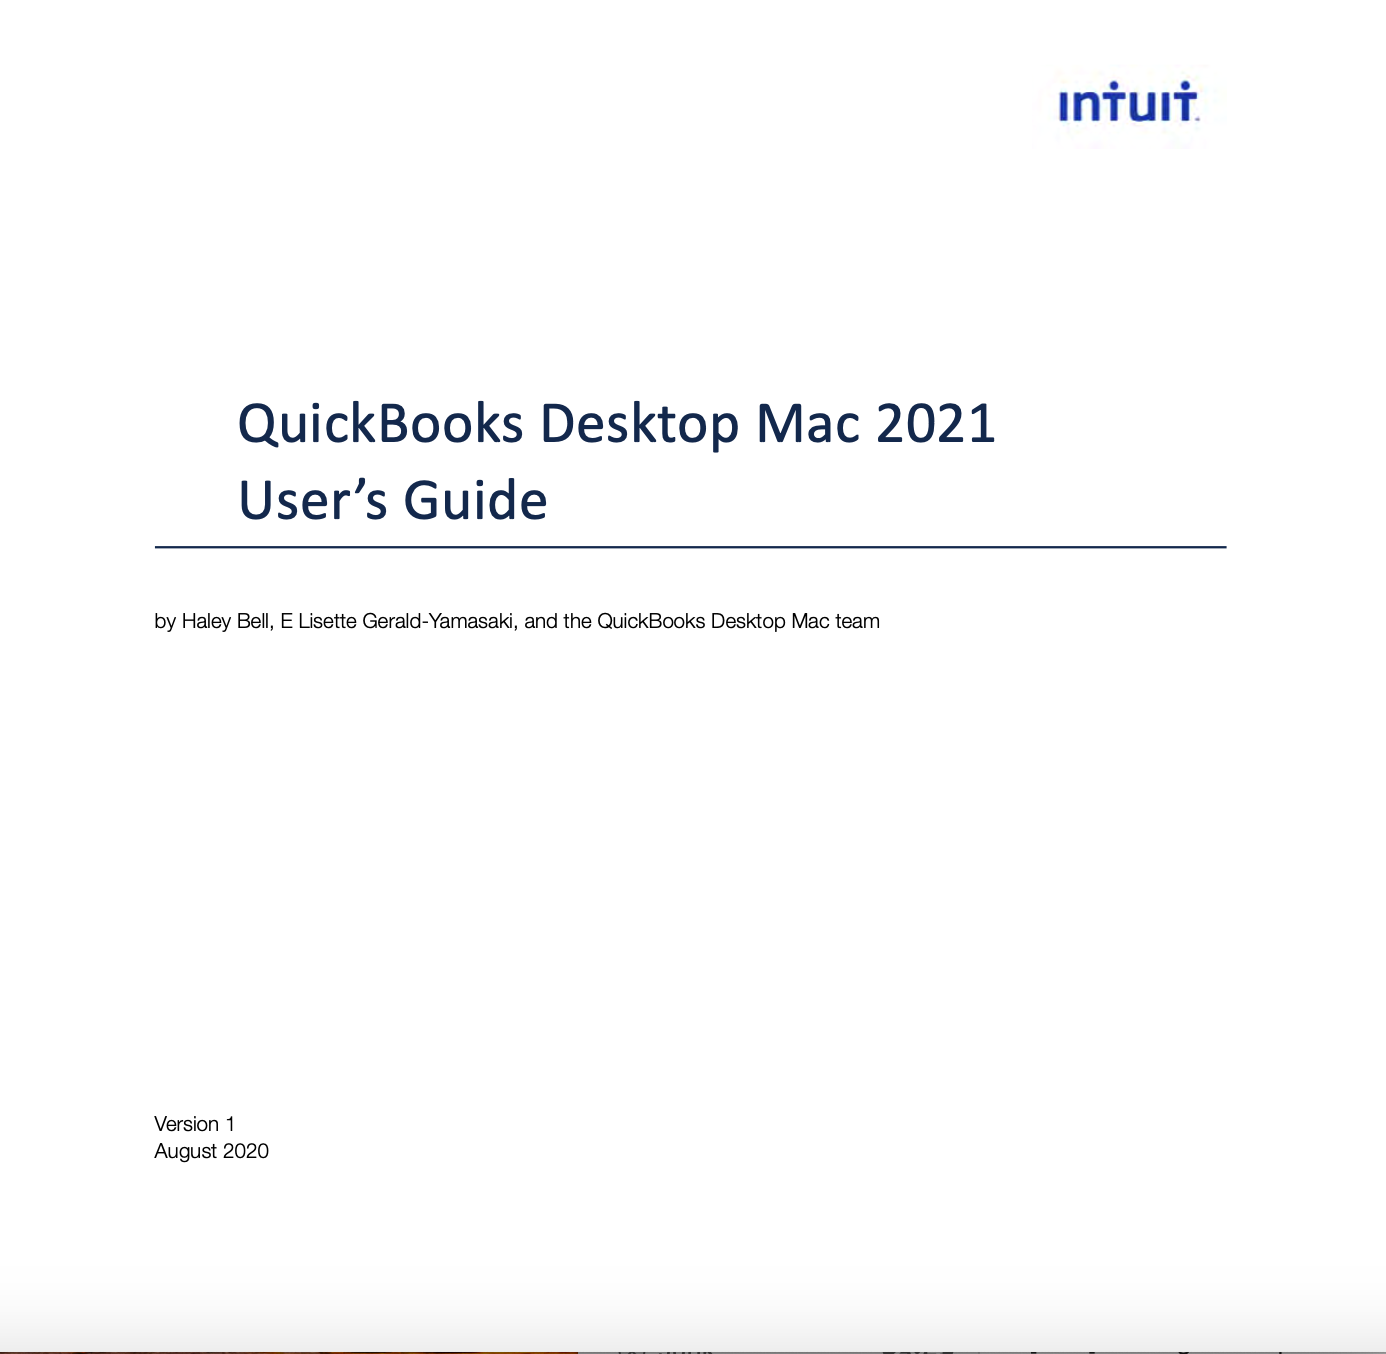 quickbooks for mac q & a